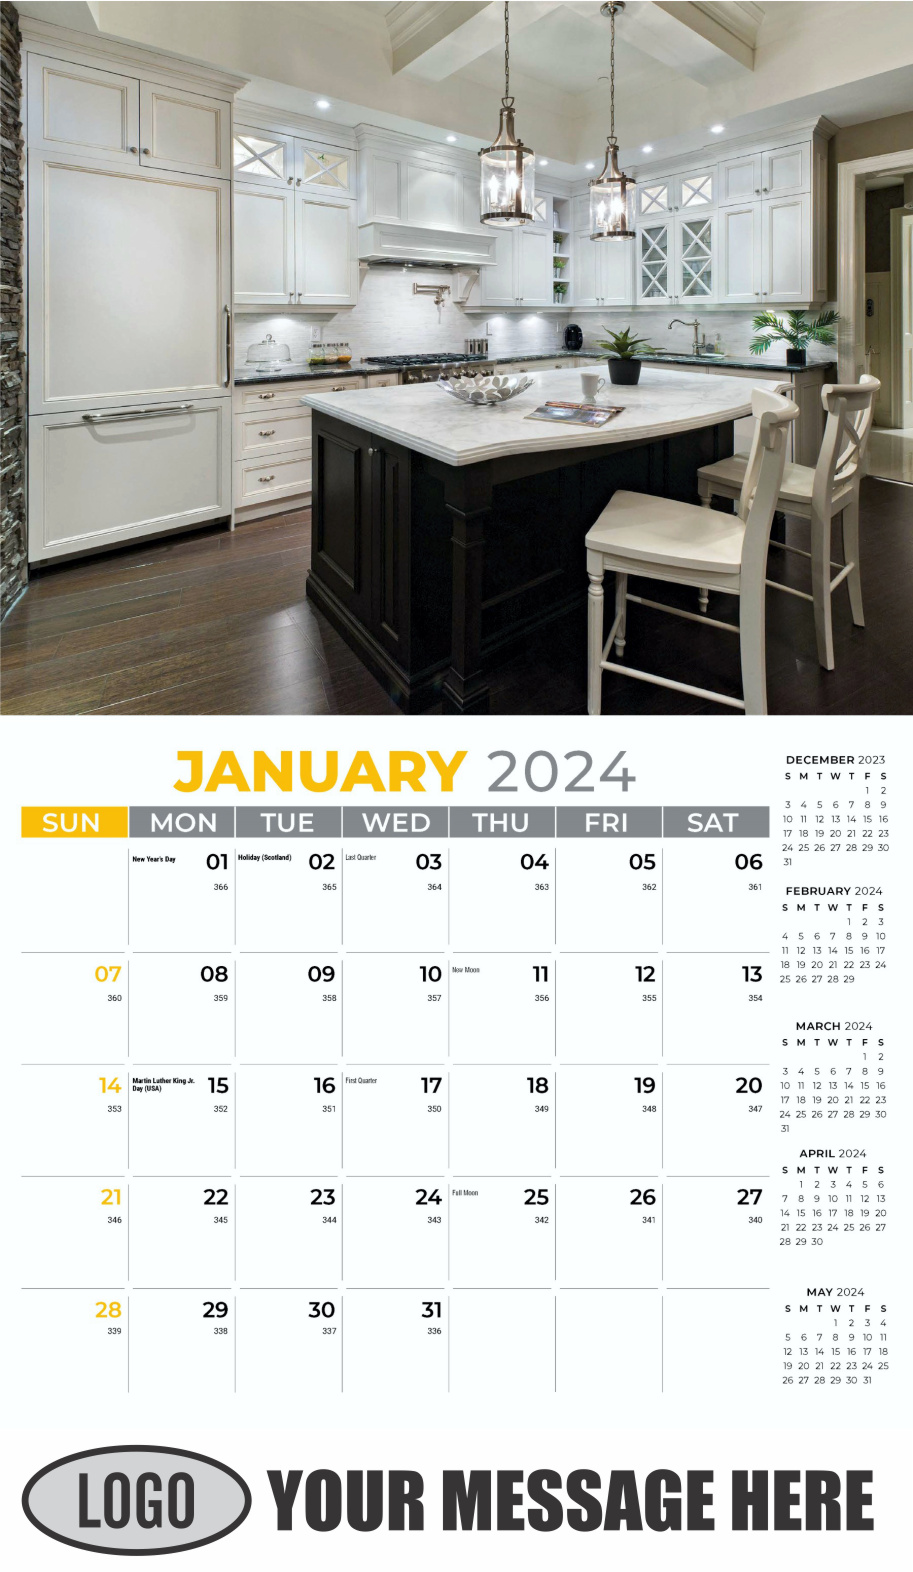 Decor and Design 2024 Interior Design Business Promotional Calendar - January